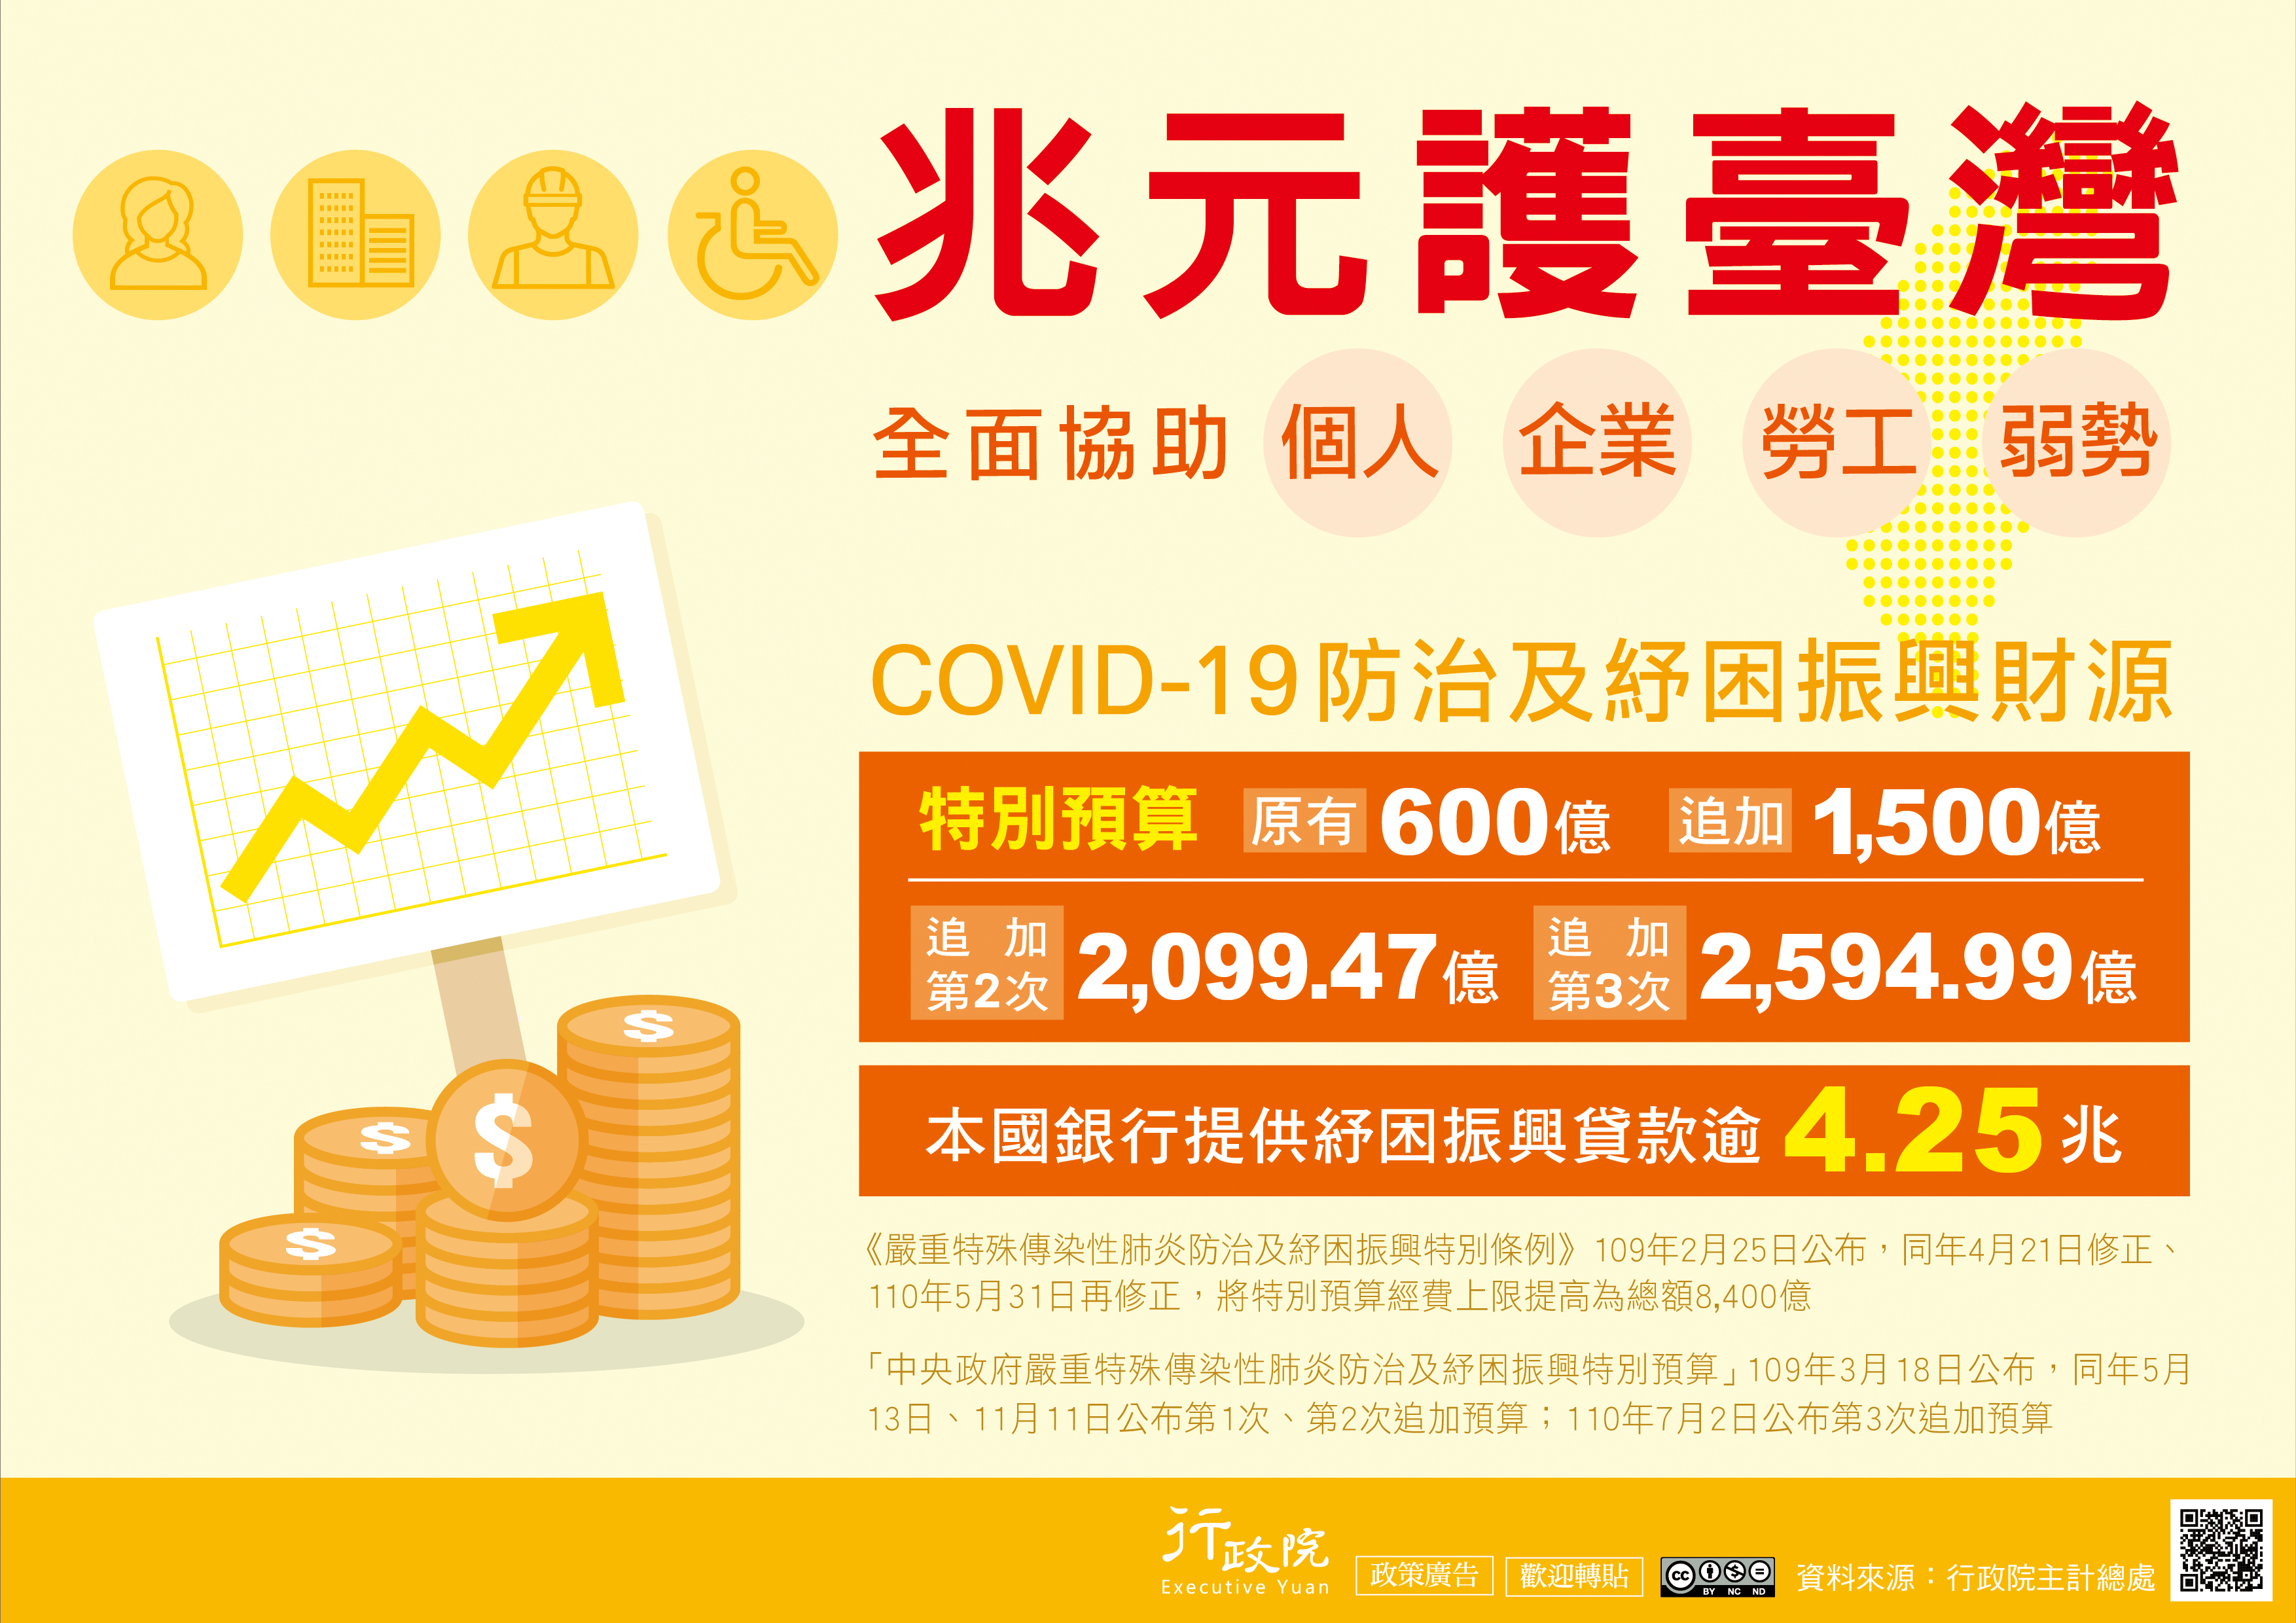 政策宣導-「COVID-19防治及紓困預算」政策推廣電子單張宣傳海報